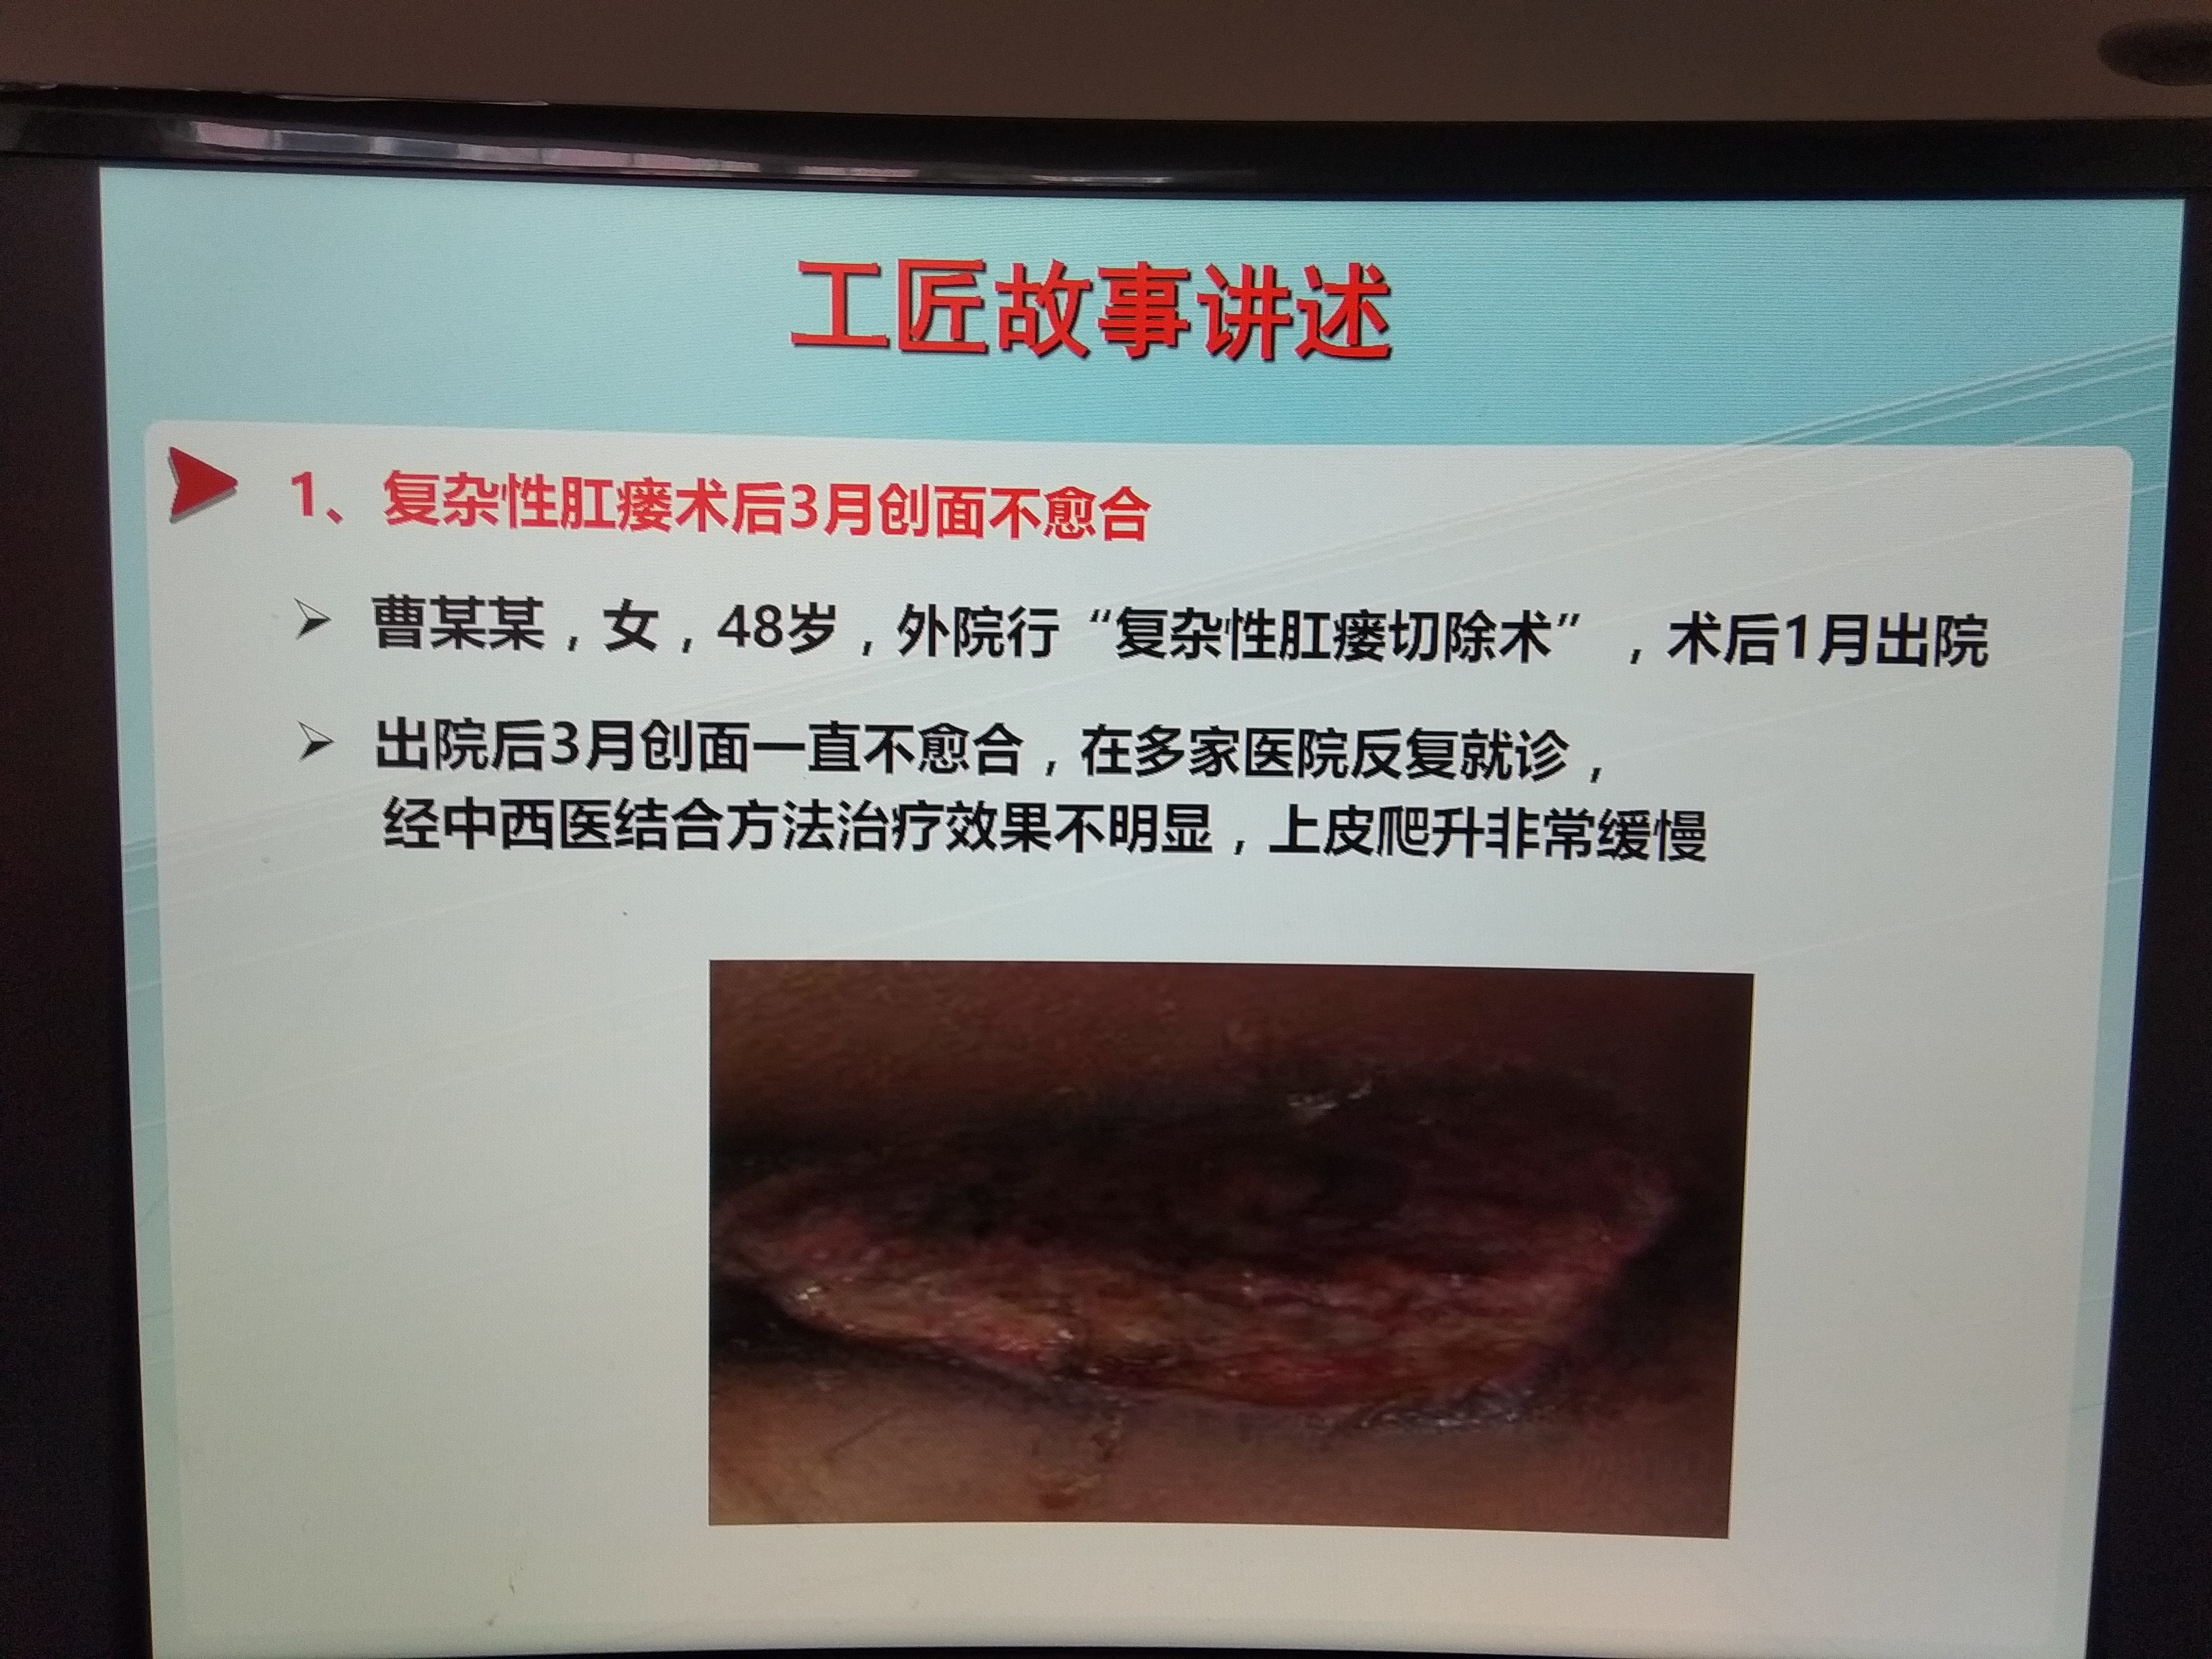 复杂性肛瘘术后伤口久不愈合,采用我院上海市非物质文化遗产"敛痔散"